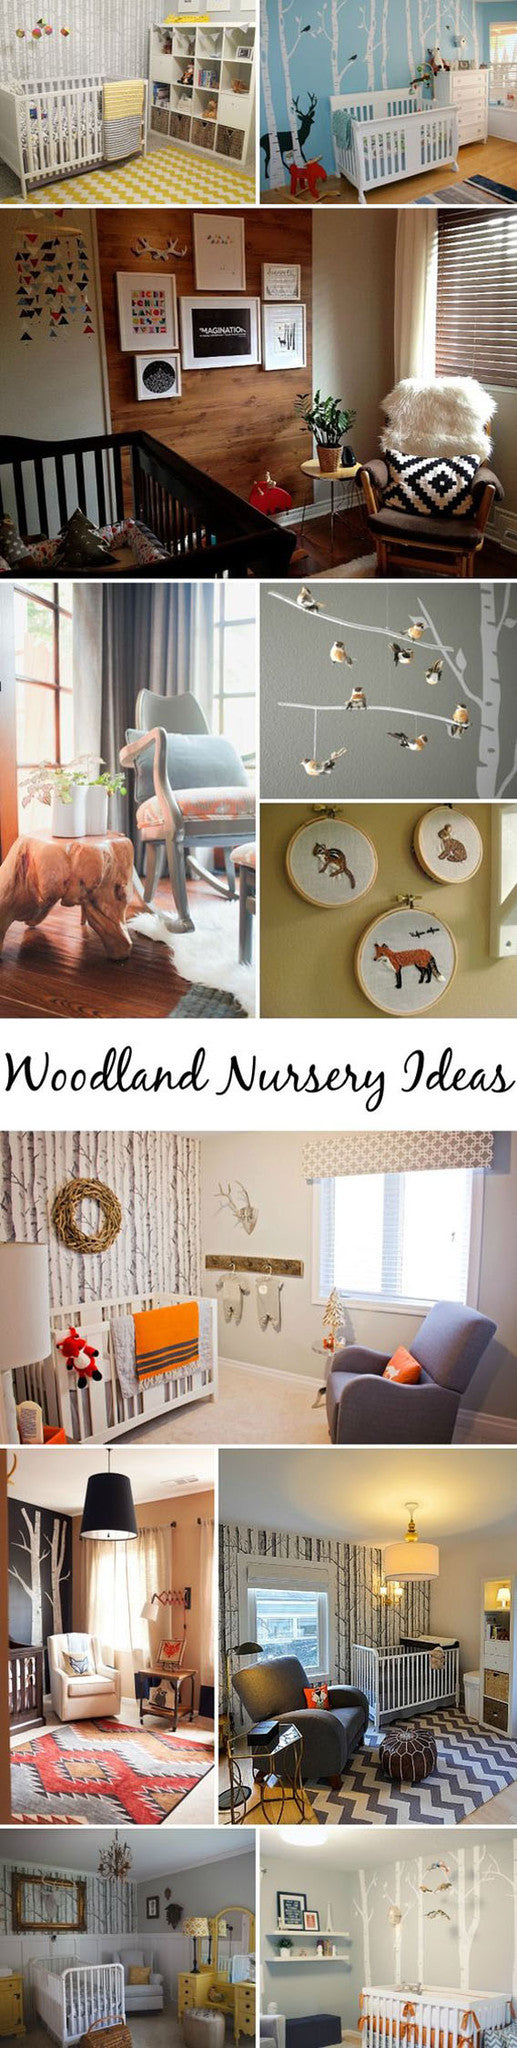 Woodland Nursery Ideas